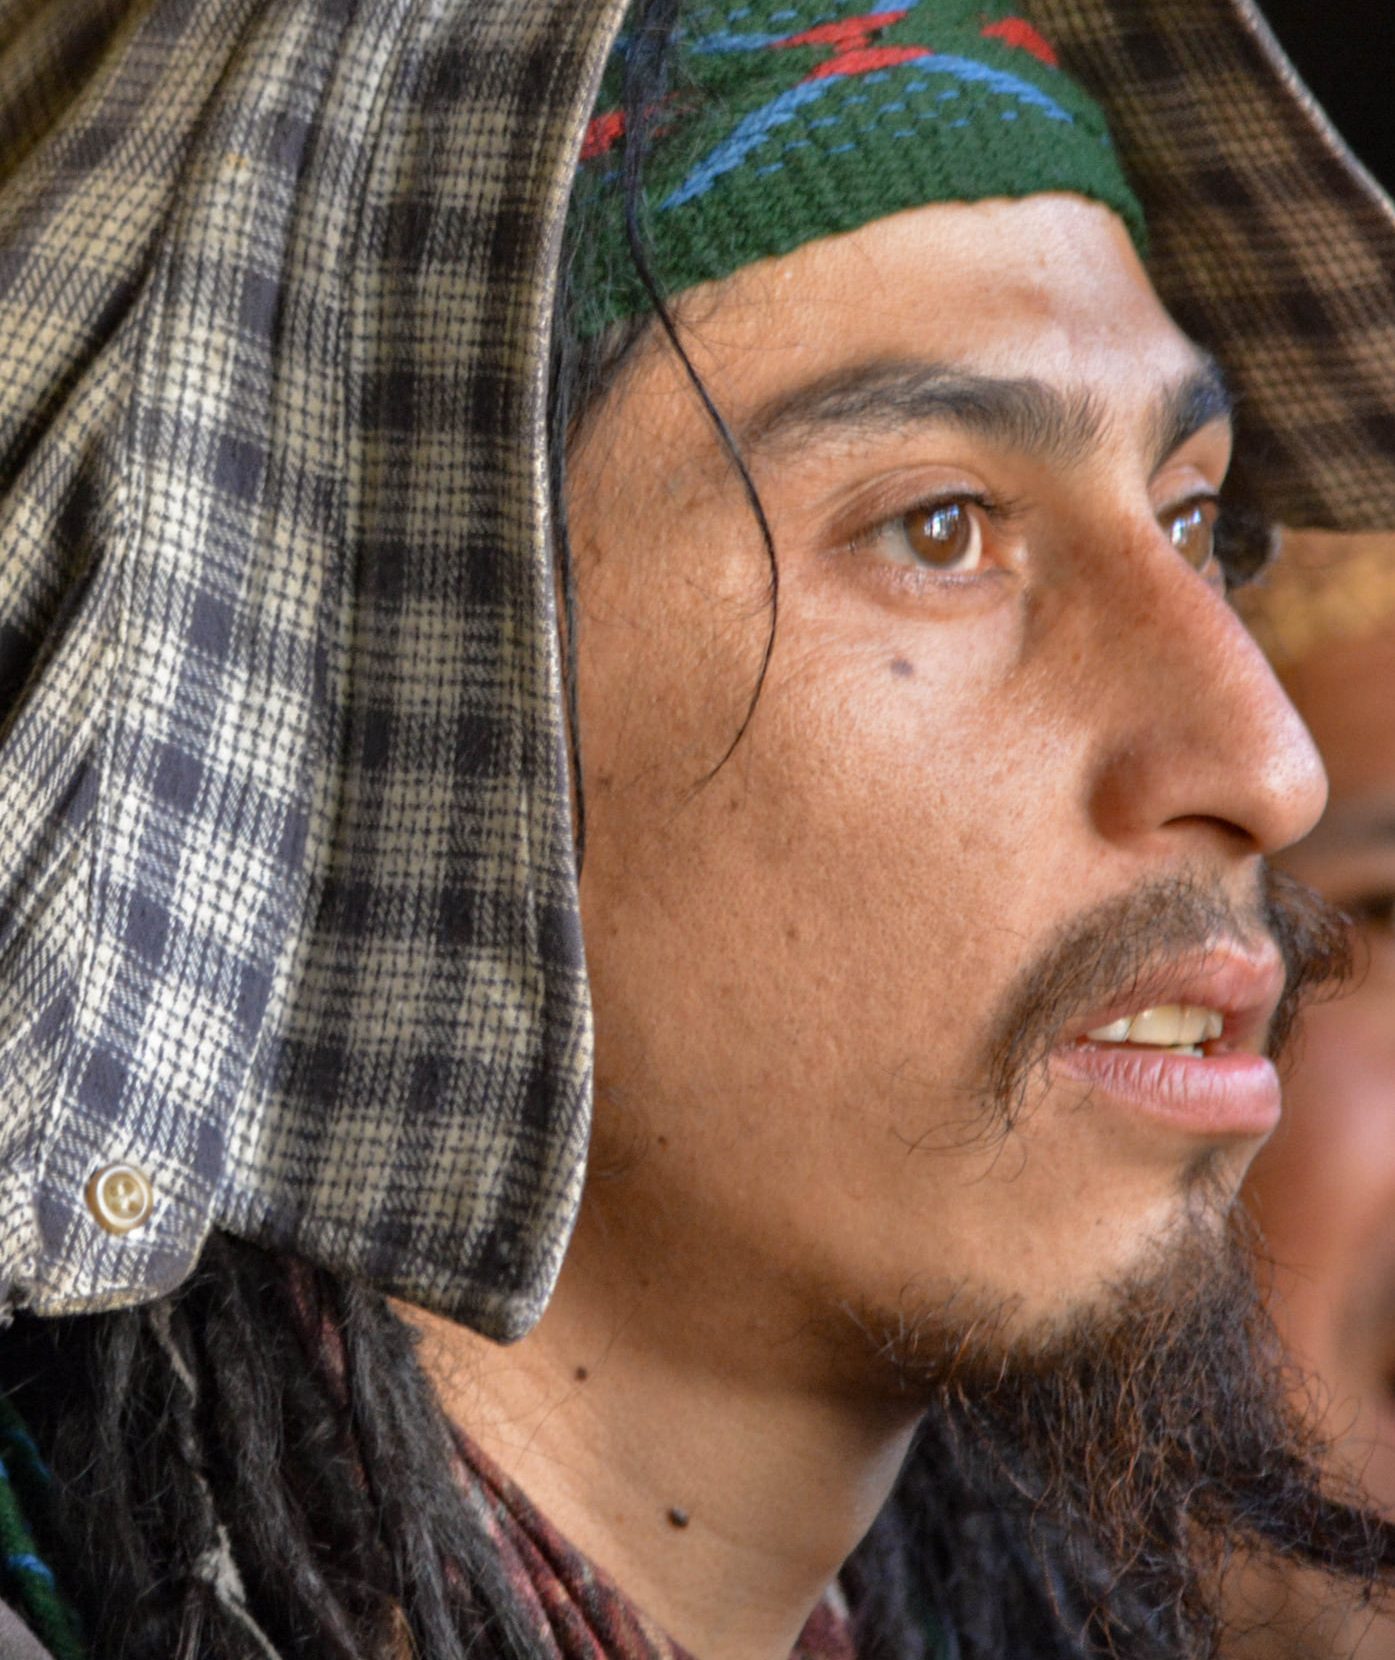 Elías Garay, en una de las fotos que le tomaron durante la ocupación mapuche. (Fuente: Facebook)